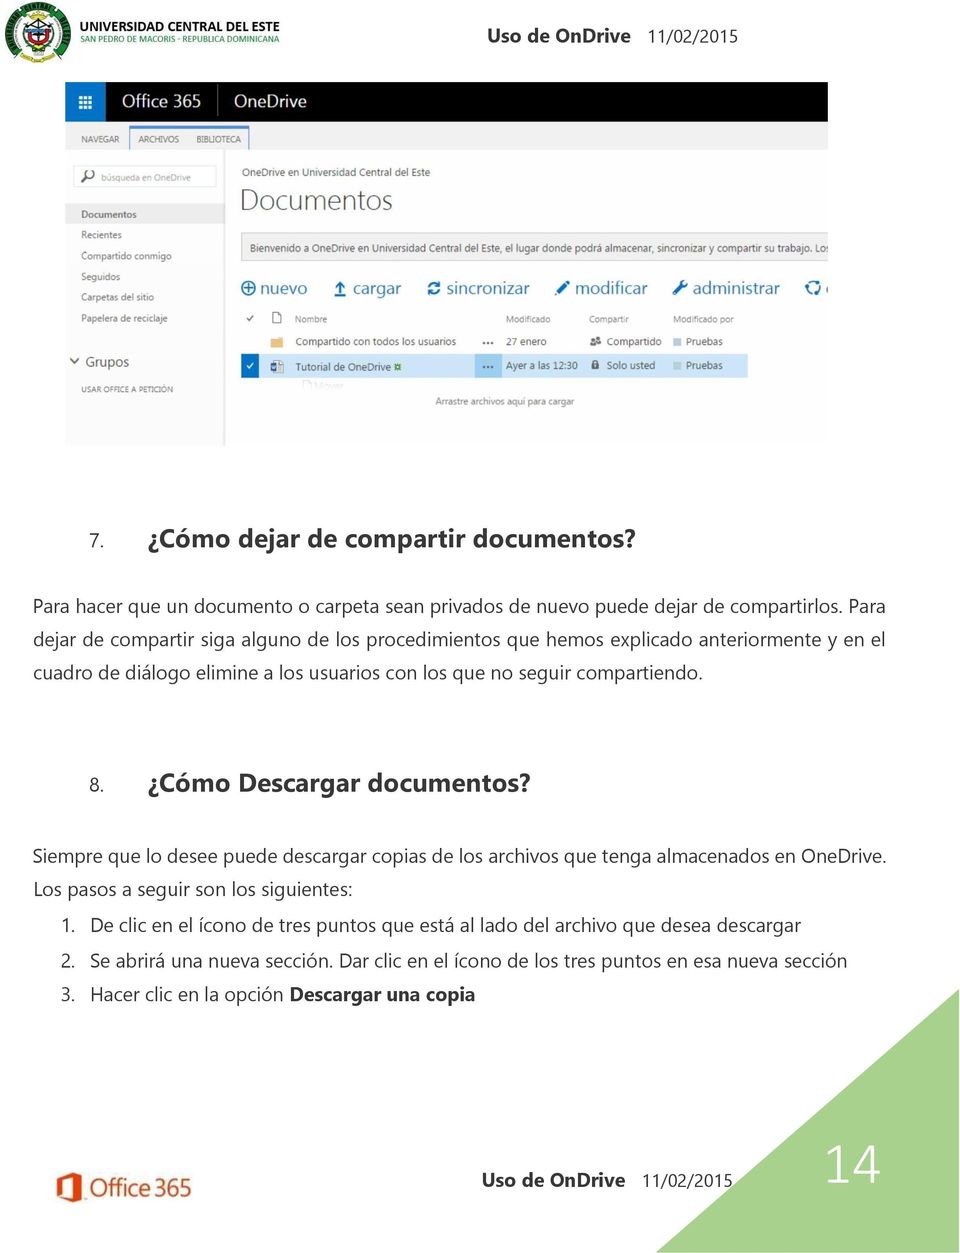 Cómo Descargar documentos? Siempre que lo desee puede descargar copias de los archivos que tenga almacenados en OneDrive. Los pasos a seguir son los siguientes: 1.